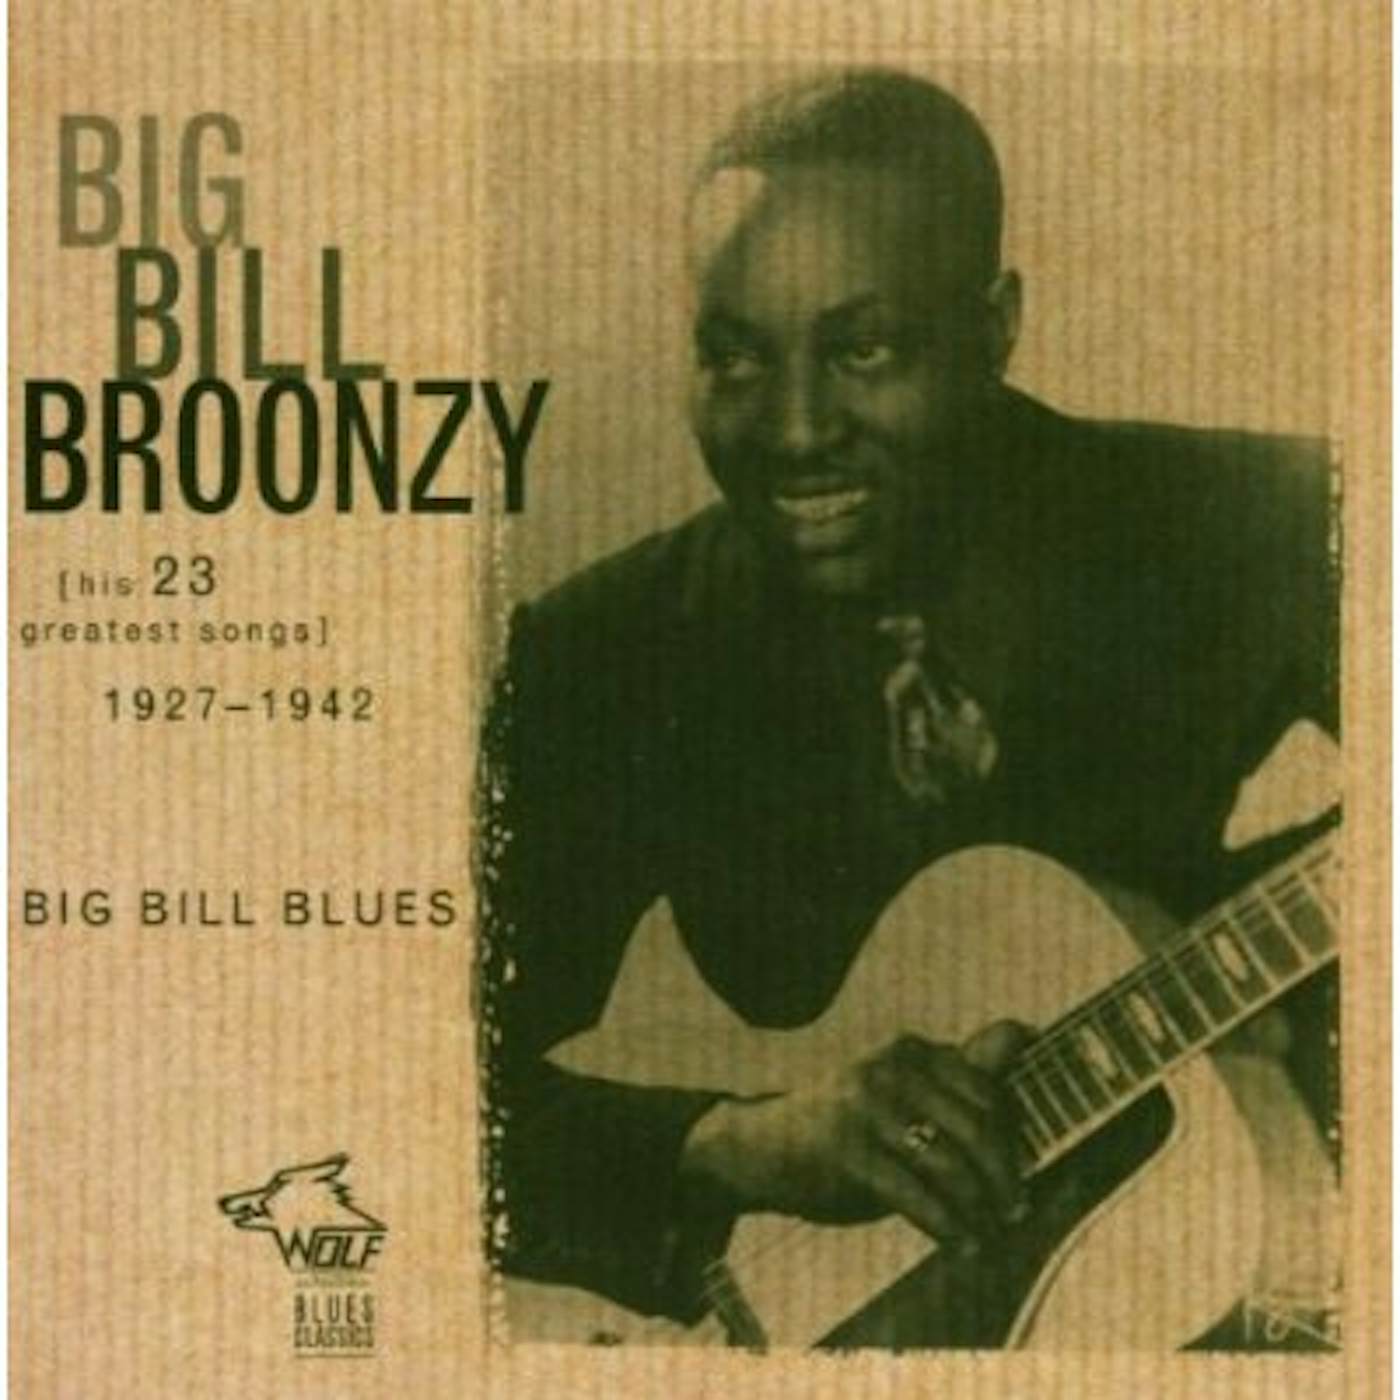 Big Bill Broonzy BIG BILL BLUES: 23 GREATEST HIT SONGS 1927-1942 CD